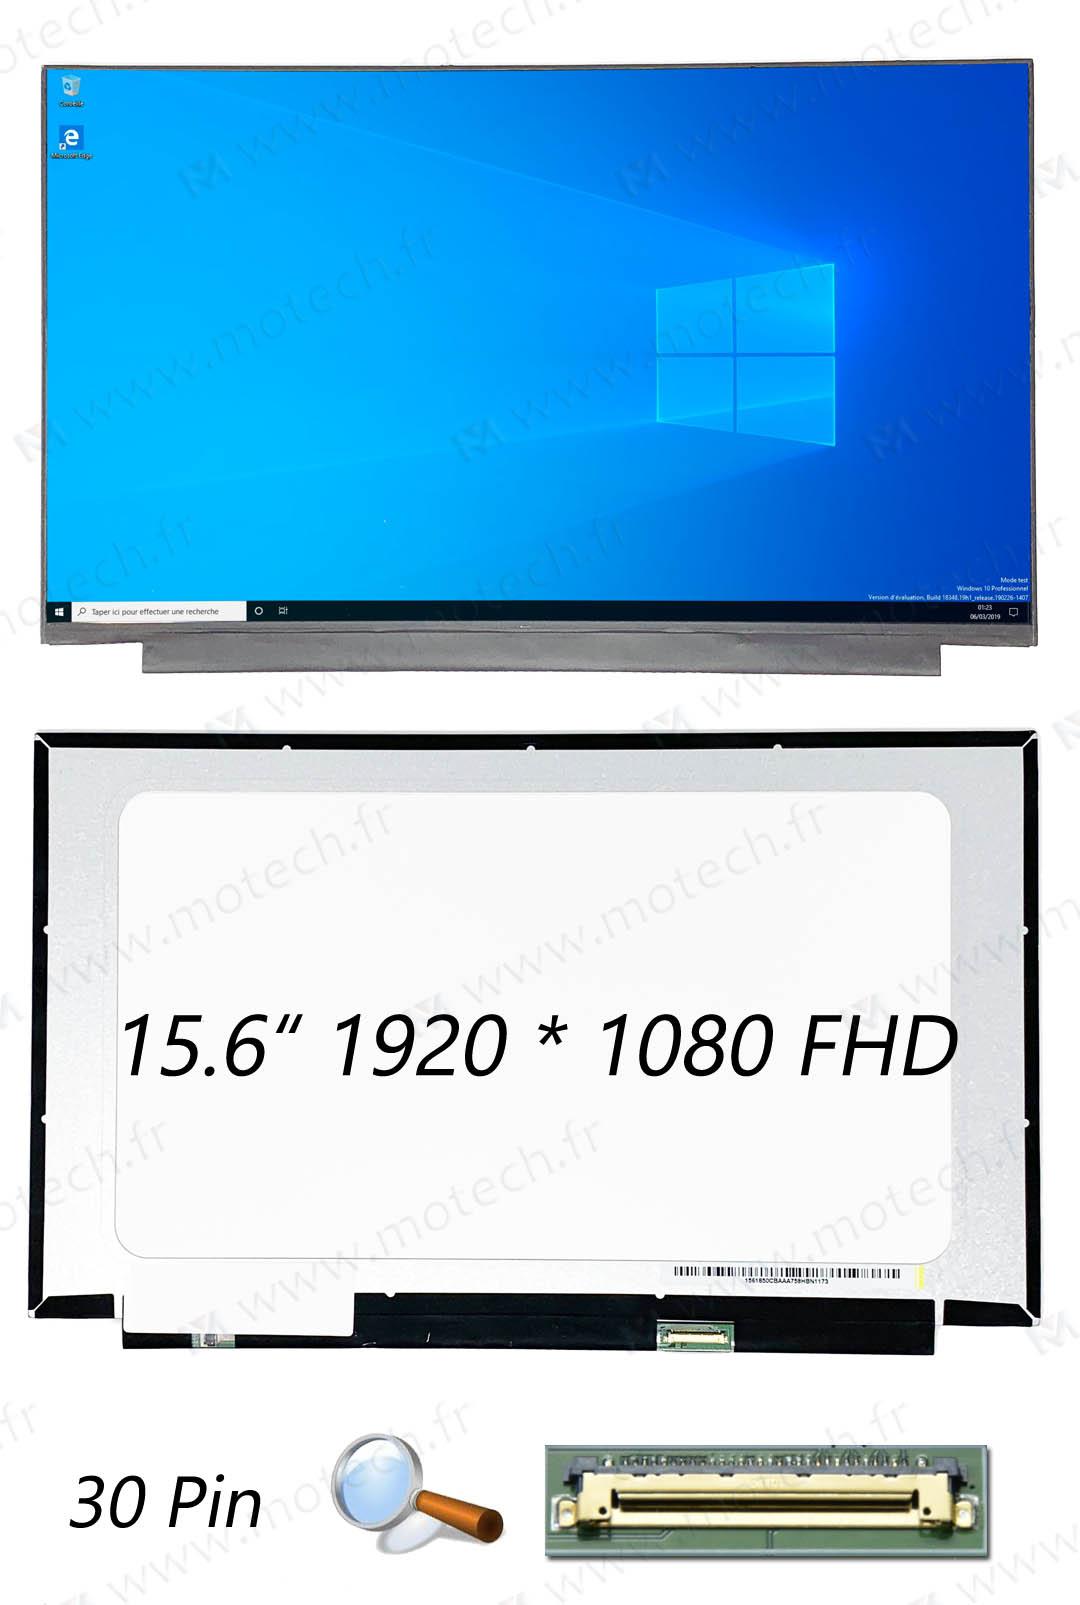 华硕 Asus S530FN 屏幕, 华硕 Asus S530FN 显示屏, 华硕 Asus S530FN 液晶屏, 华硕 Asus S530FN 显示器, 华硕 Asus S530FN 液晶屏幕, 华硕 Asus S530FN LCD,